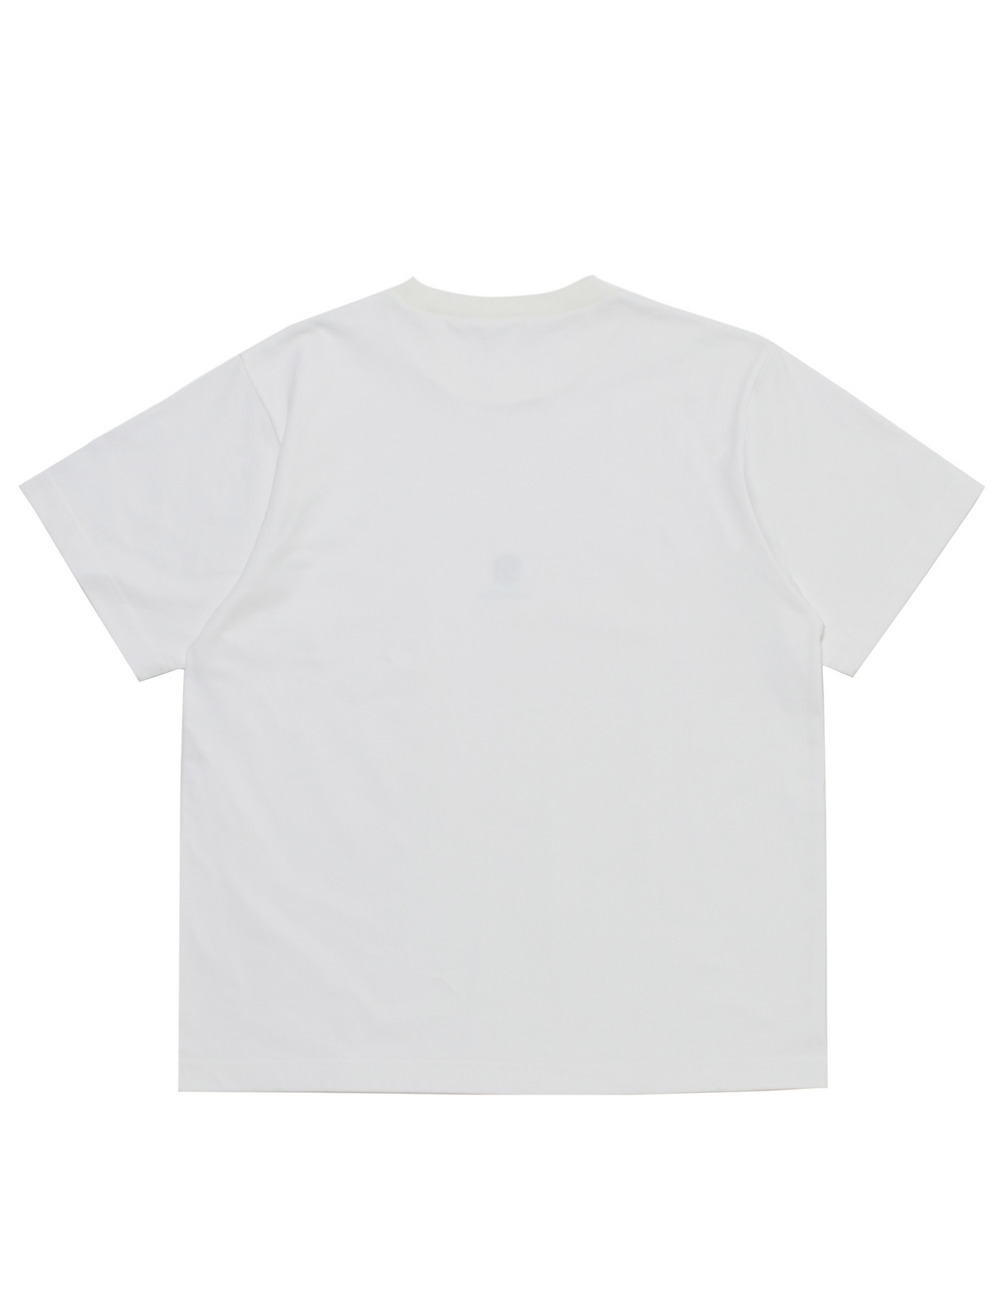 【オンライン限定】パックTシャツ(2枚組)/【ONLINE LIMITED】PACK TEE(2PCS) 詳細画像 ホワイト 2